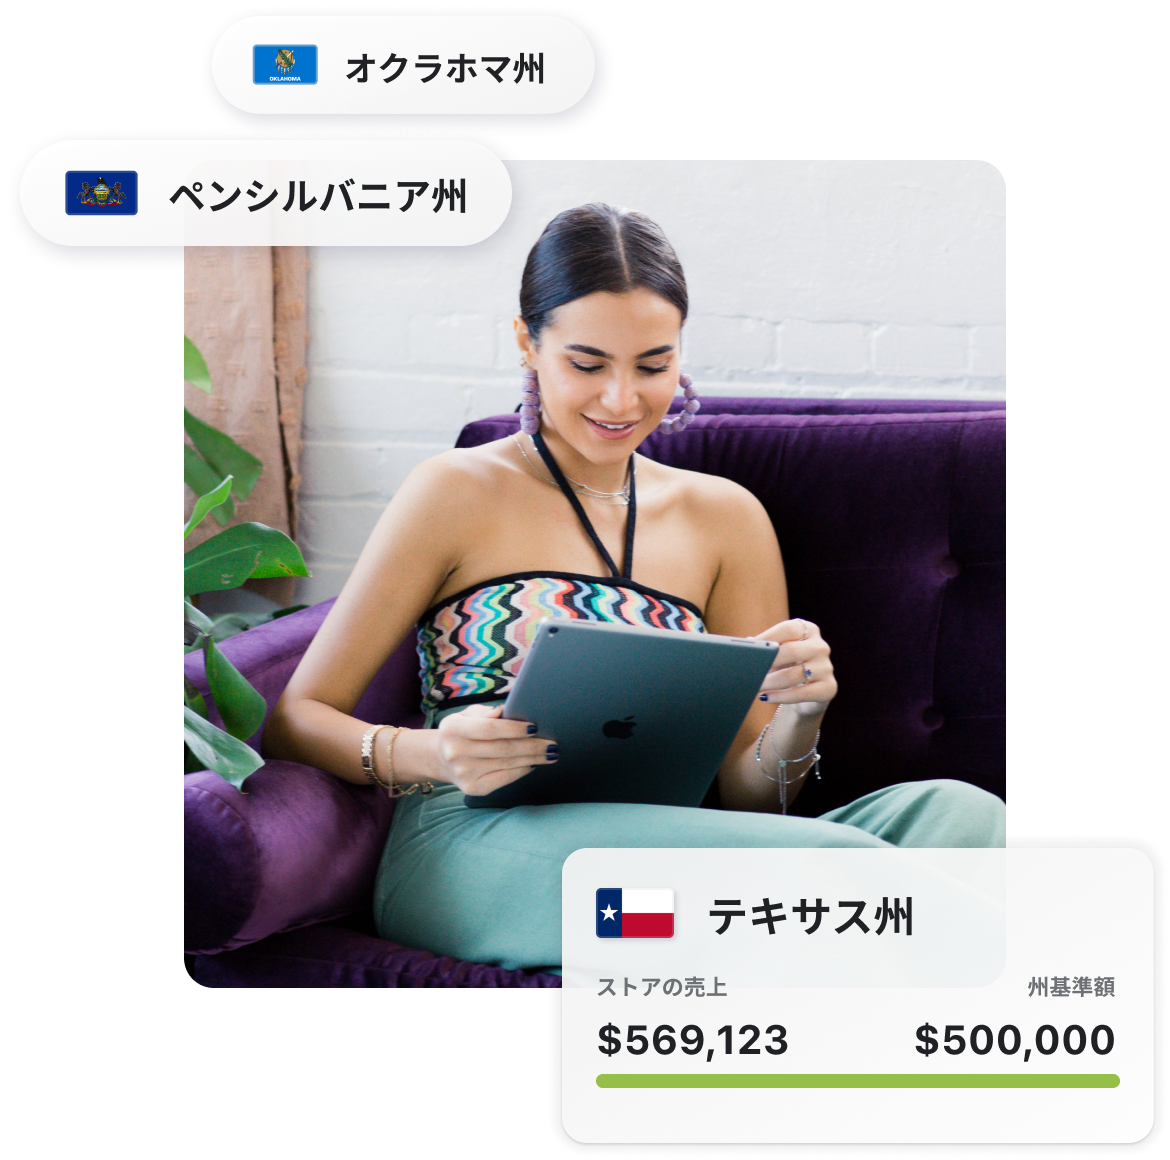 タブレットコンピューターを持ってソファーに座っている笑顔の人。その周りに、オクラホマ州、ペンシルベニア州、テキサス州の州名と州旗が浮かんでいる。売上税インサイトが表示された管理画面のインターフェイスからは、テキサス州の地域しきい値の$500,000に対して売上が$569,123になっていることがわかる。